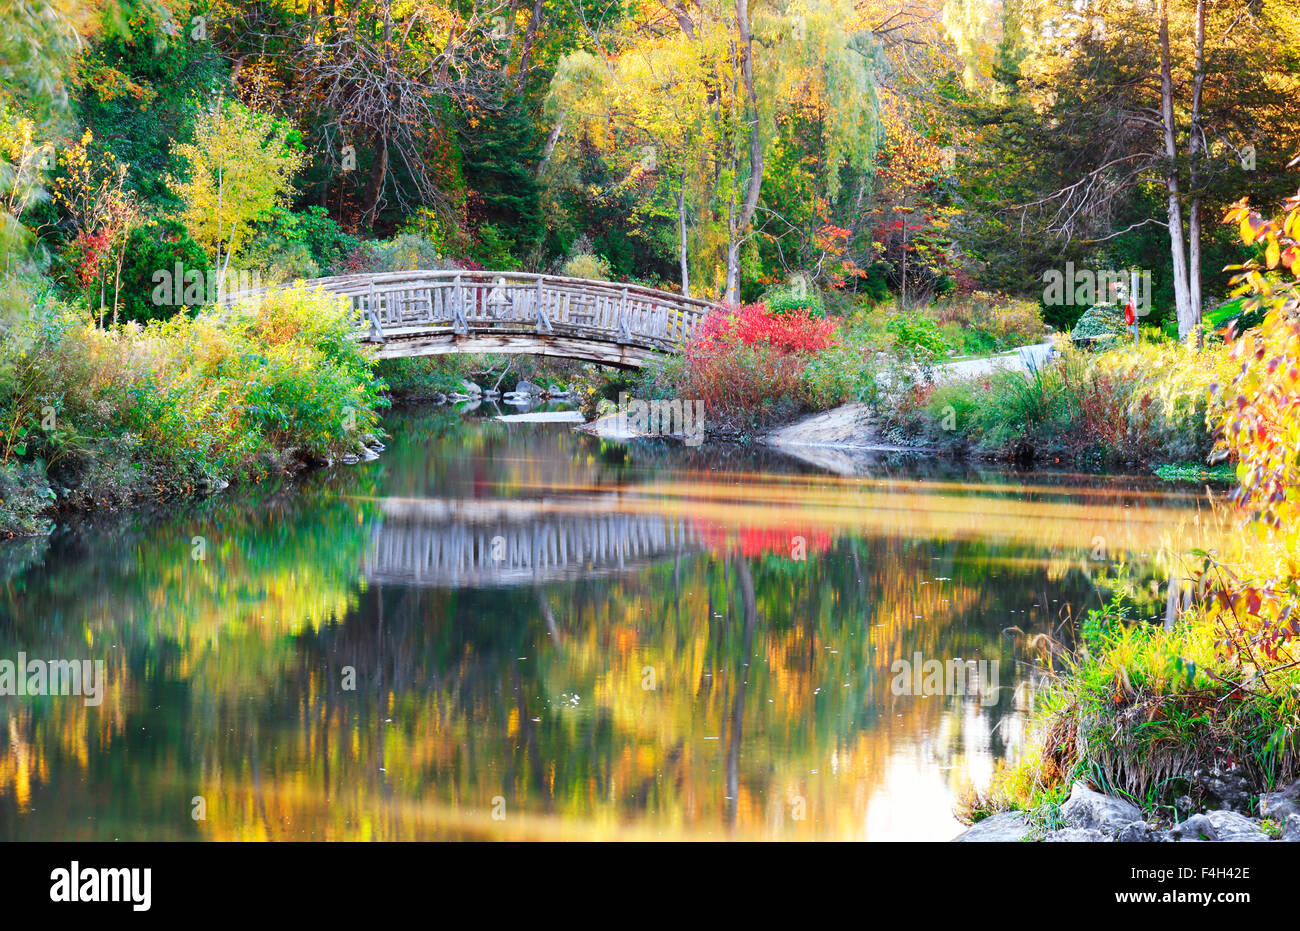 Réflexions de l'eau de pont en bois et de belles couleurs d'automne dans la région de Edwards Gardens, Toronto, Canada Banque D'Images